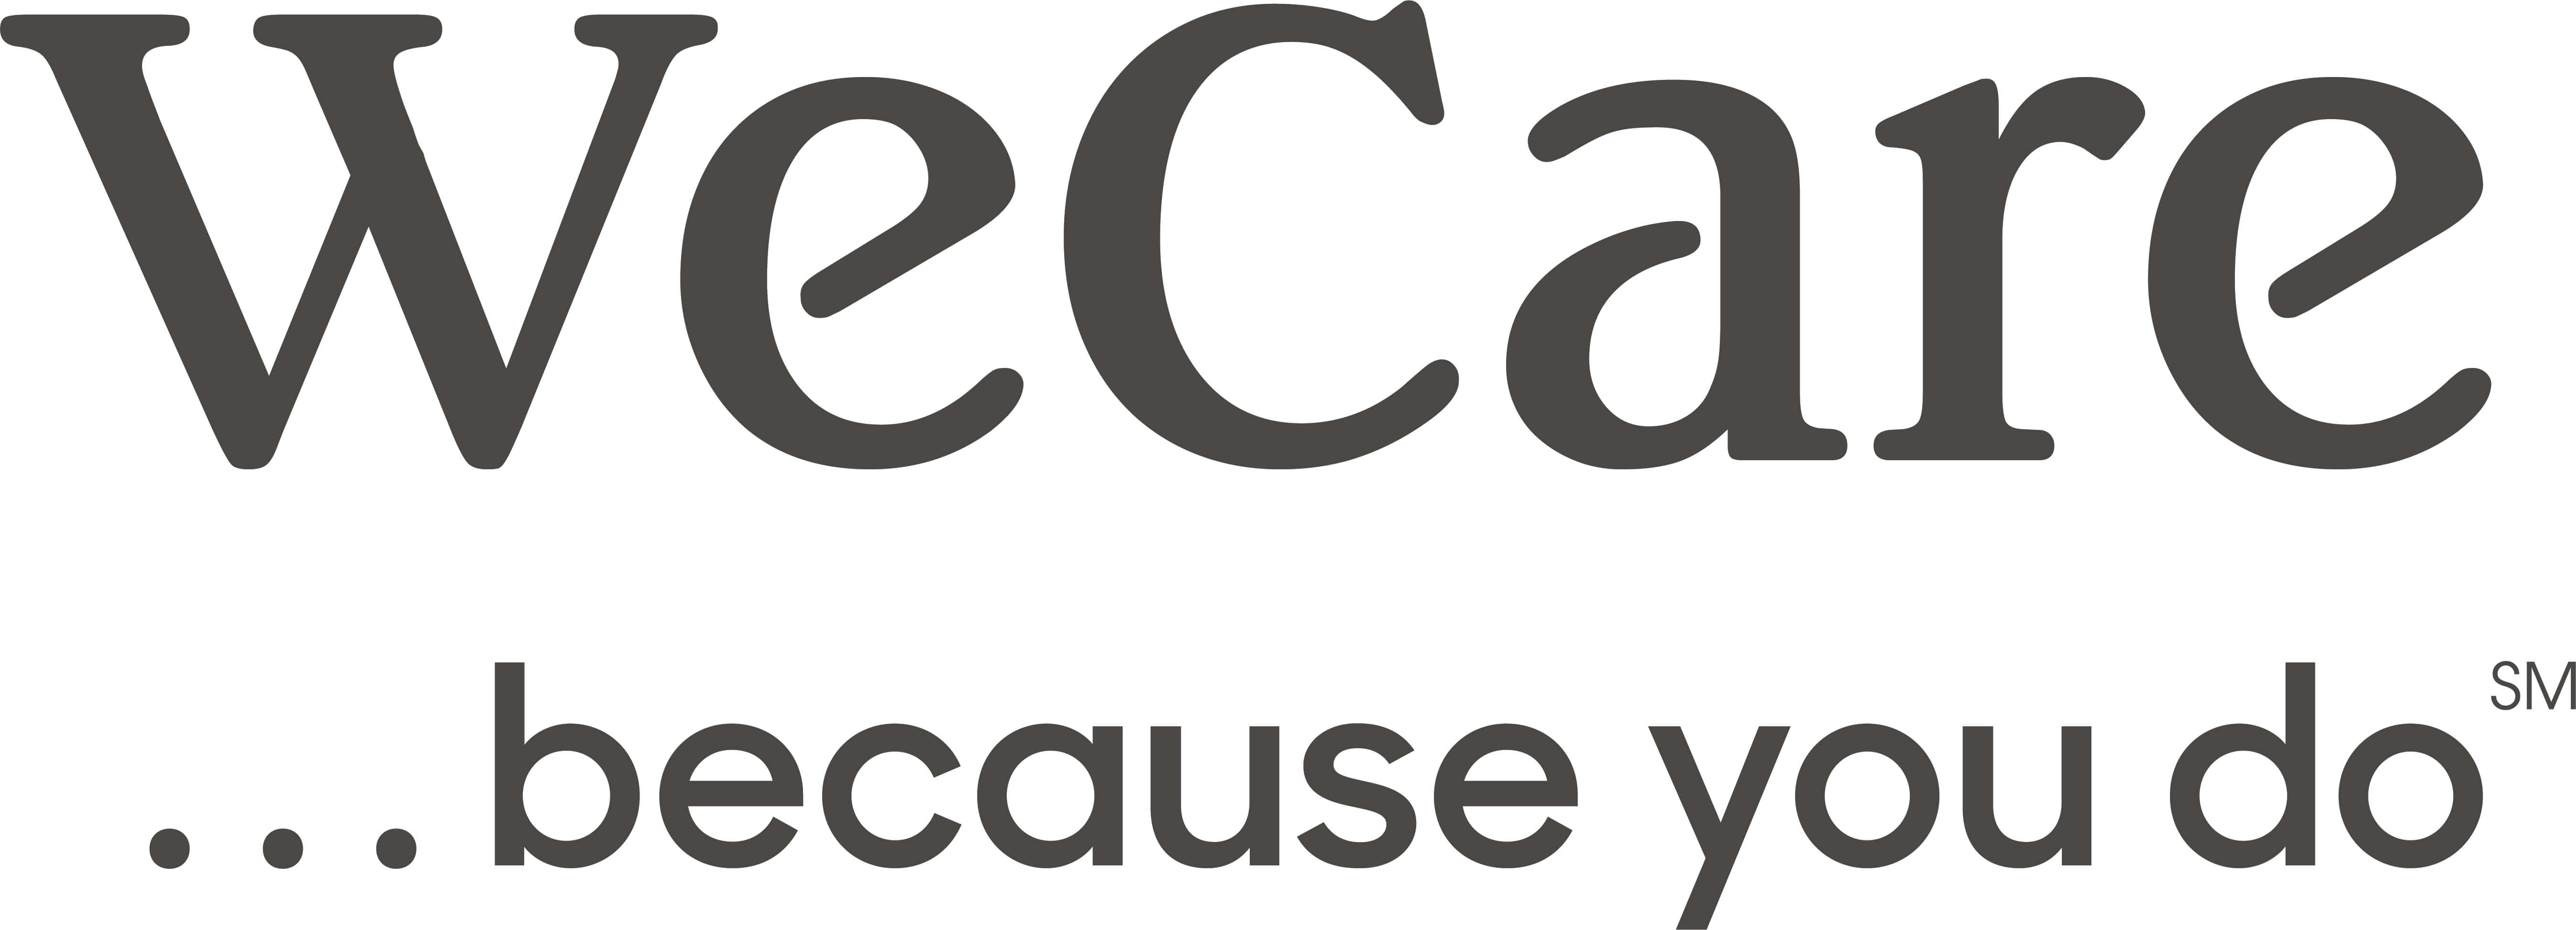 WeCare Because You Do Logo